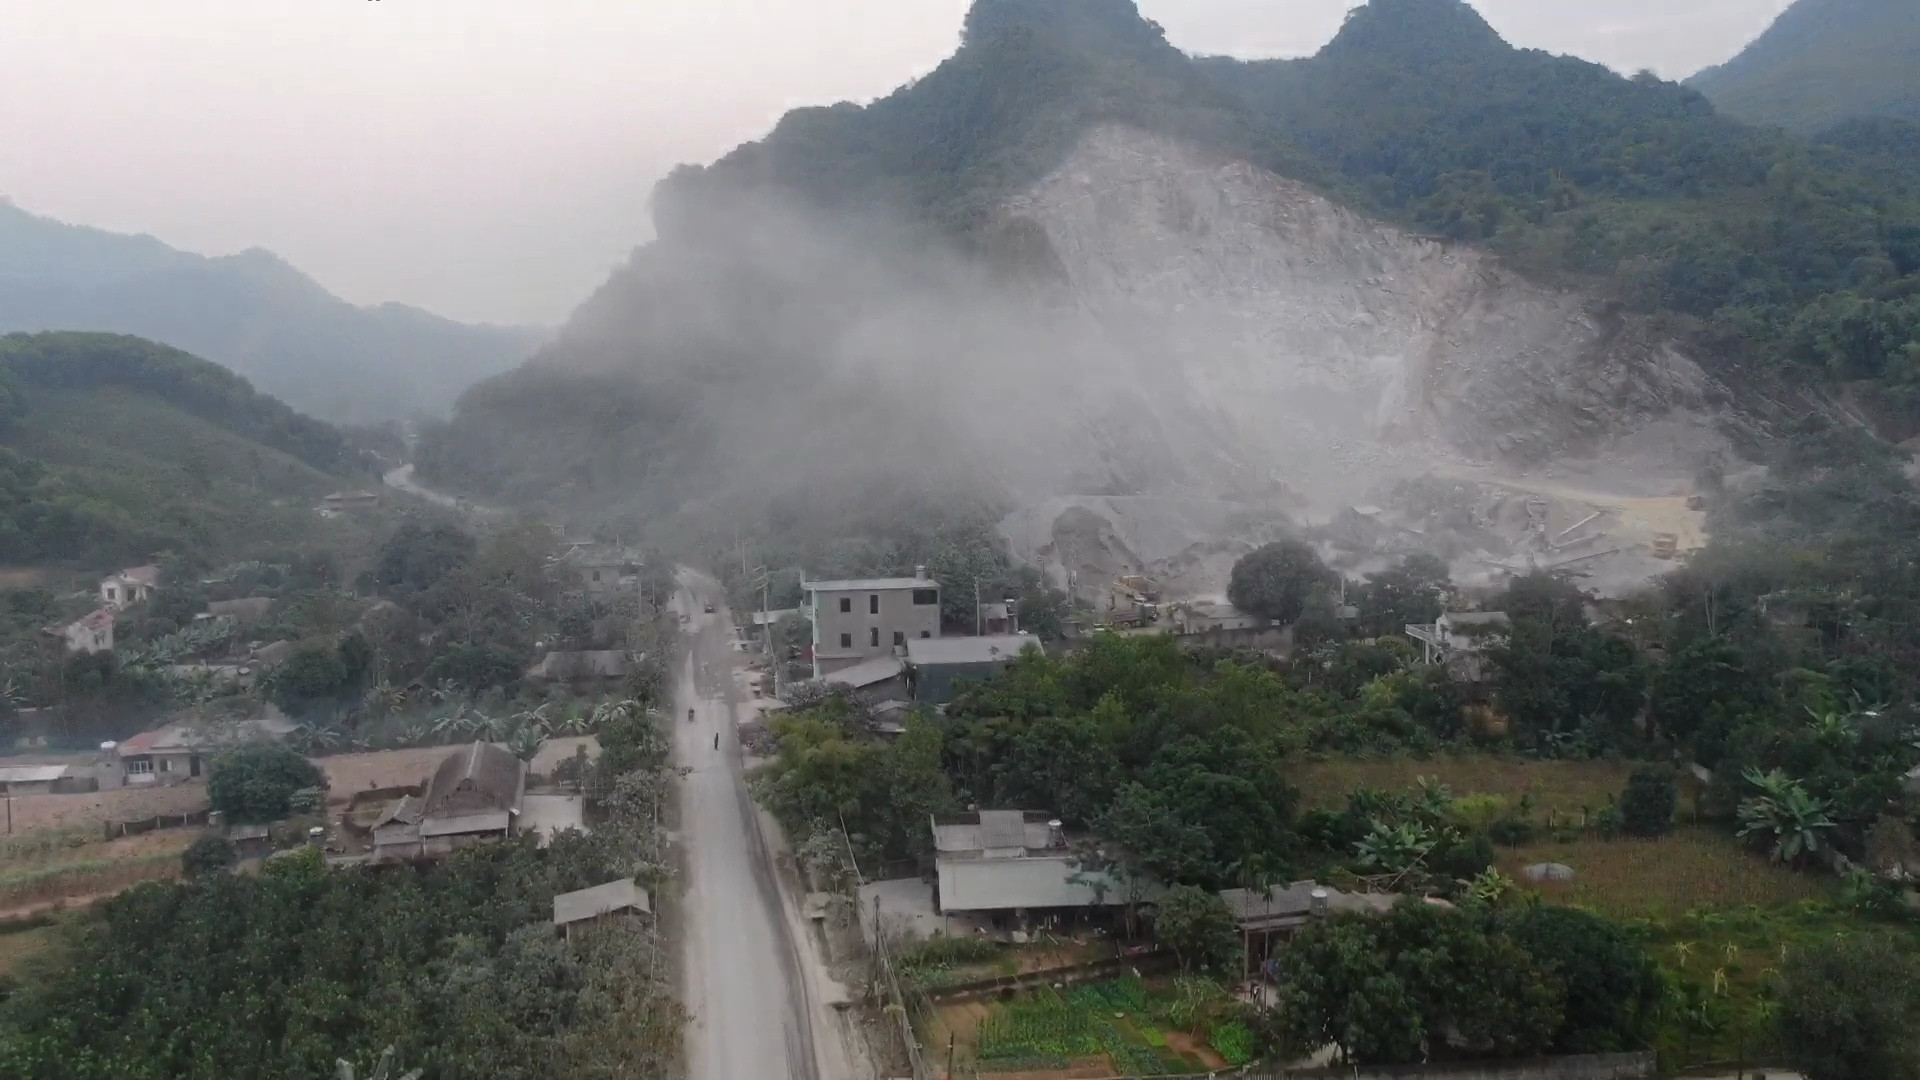 Sau tiếng nổ mìn, bụi từ mỏ đá Mèo Gù bao phủ cả một vùng rộng lớn. Ảnh: Ngô Hùng (chụp tháng 12/2022)